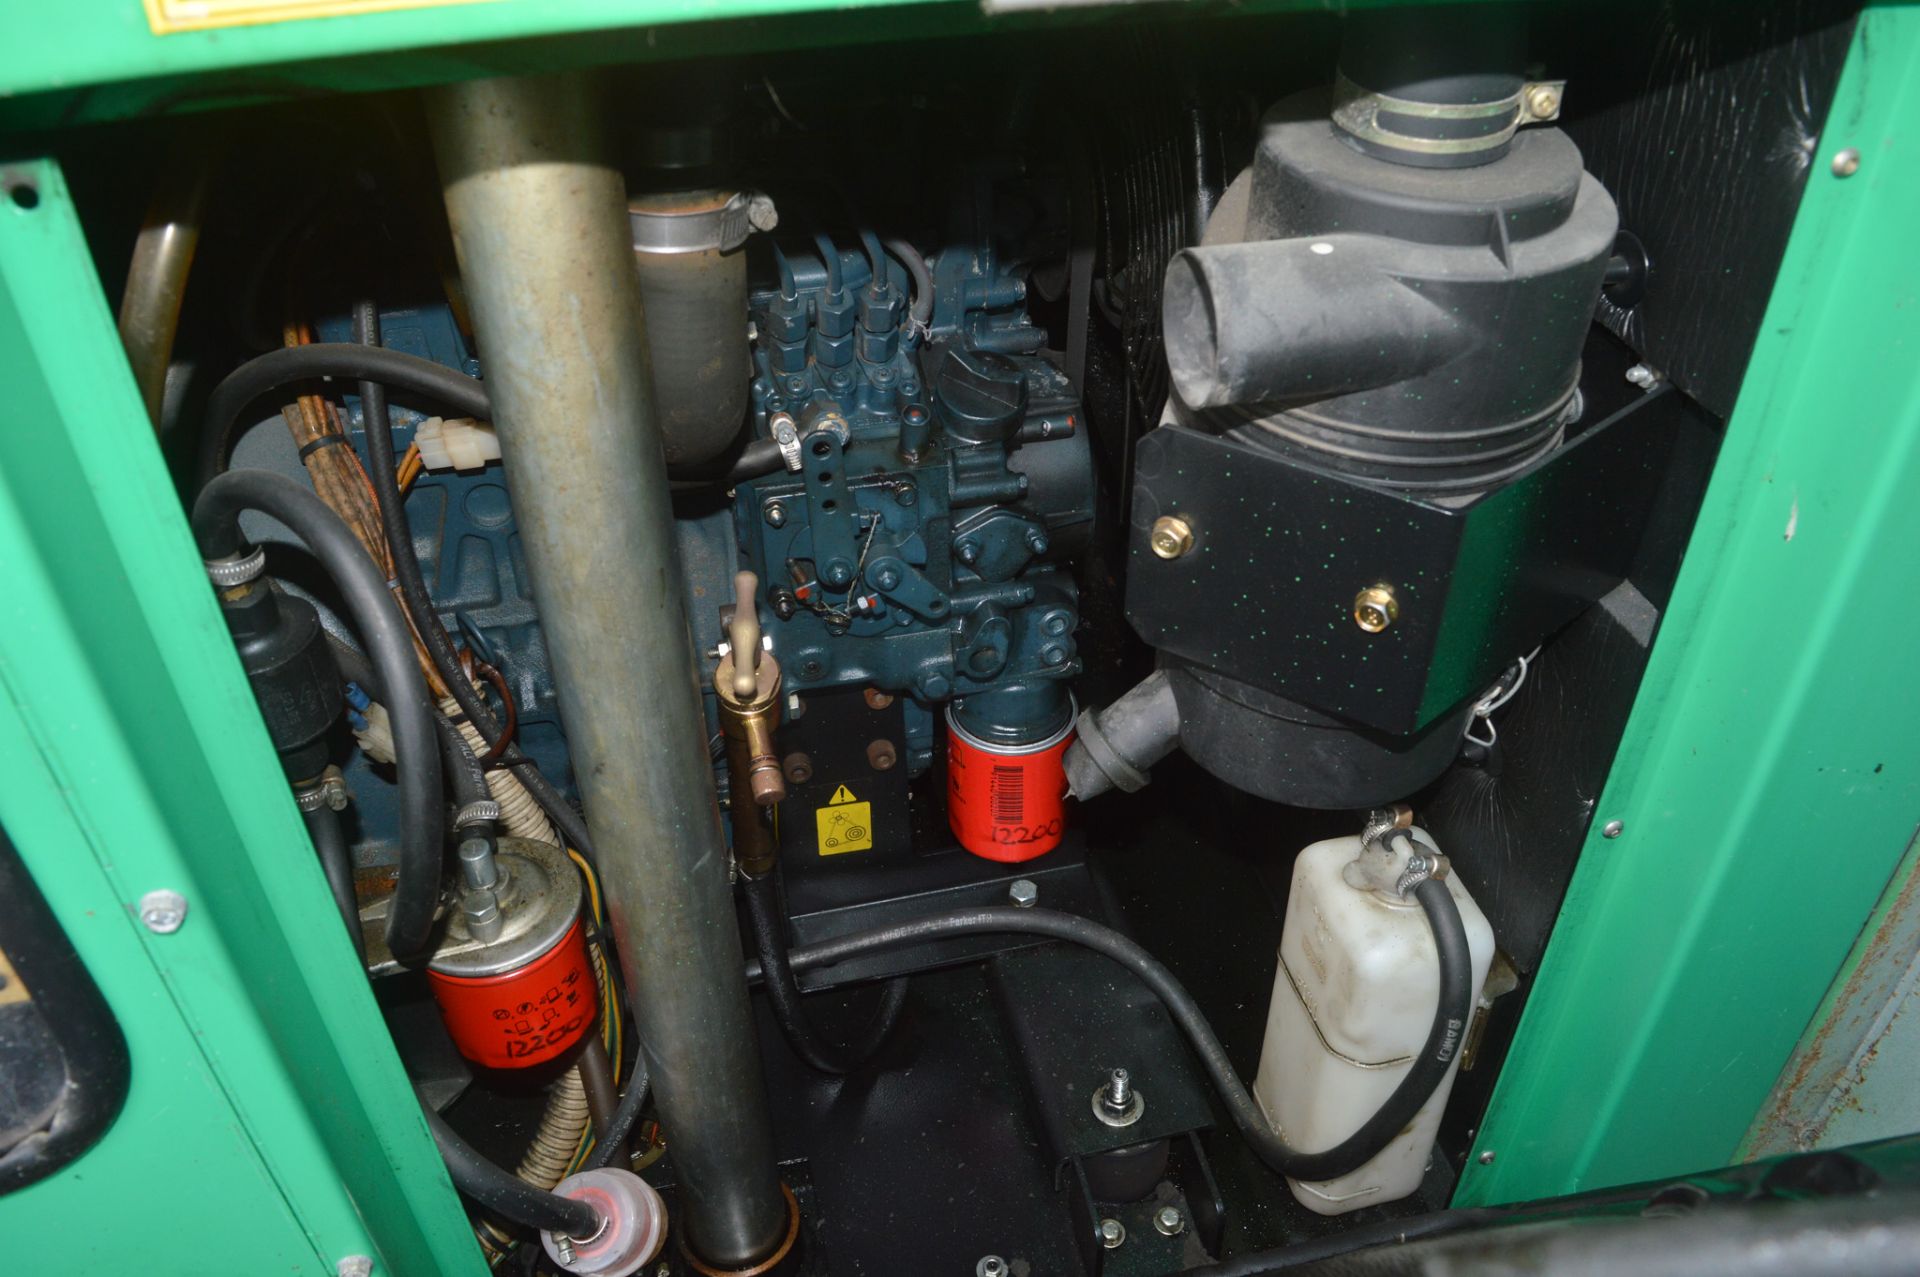 21 ft x 9 ft steel anti vandal welfare unit  c/w diesel generator & keys in office  A509651 - Image 9 of 9